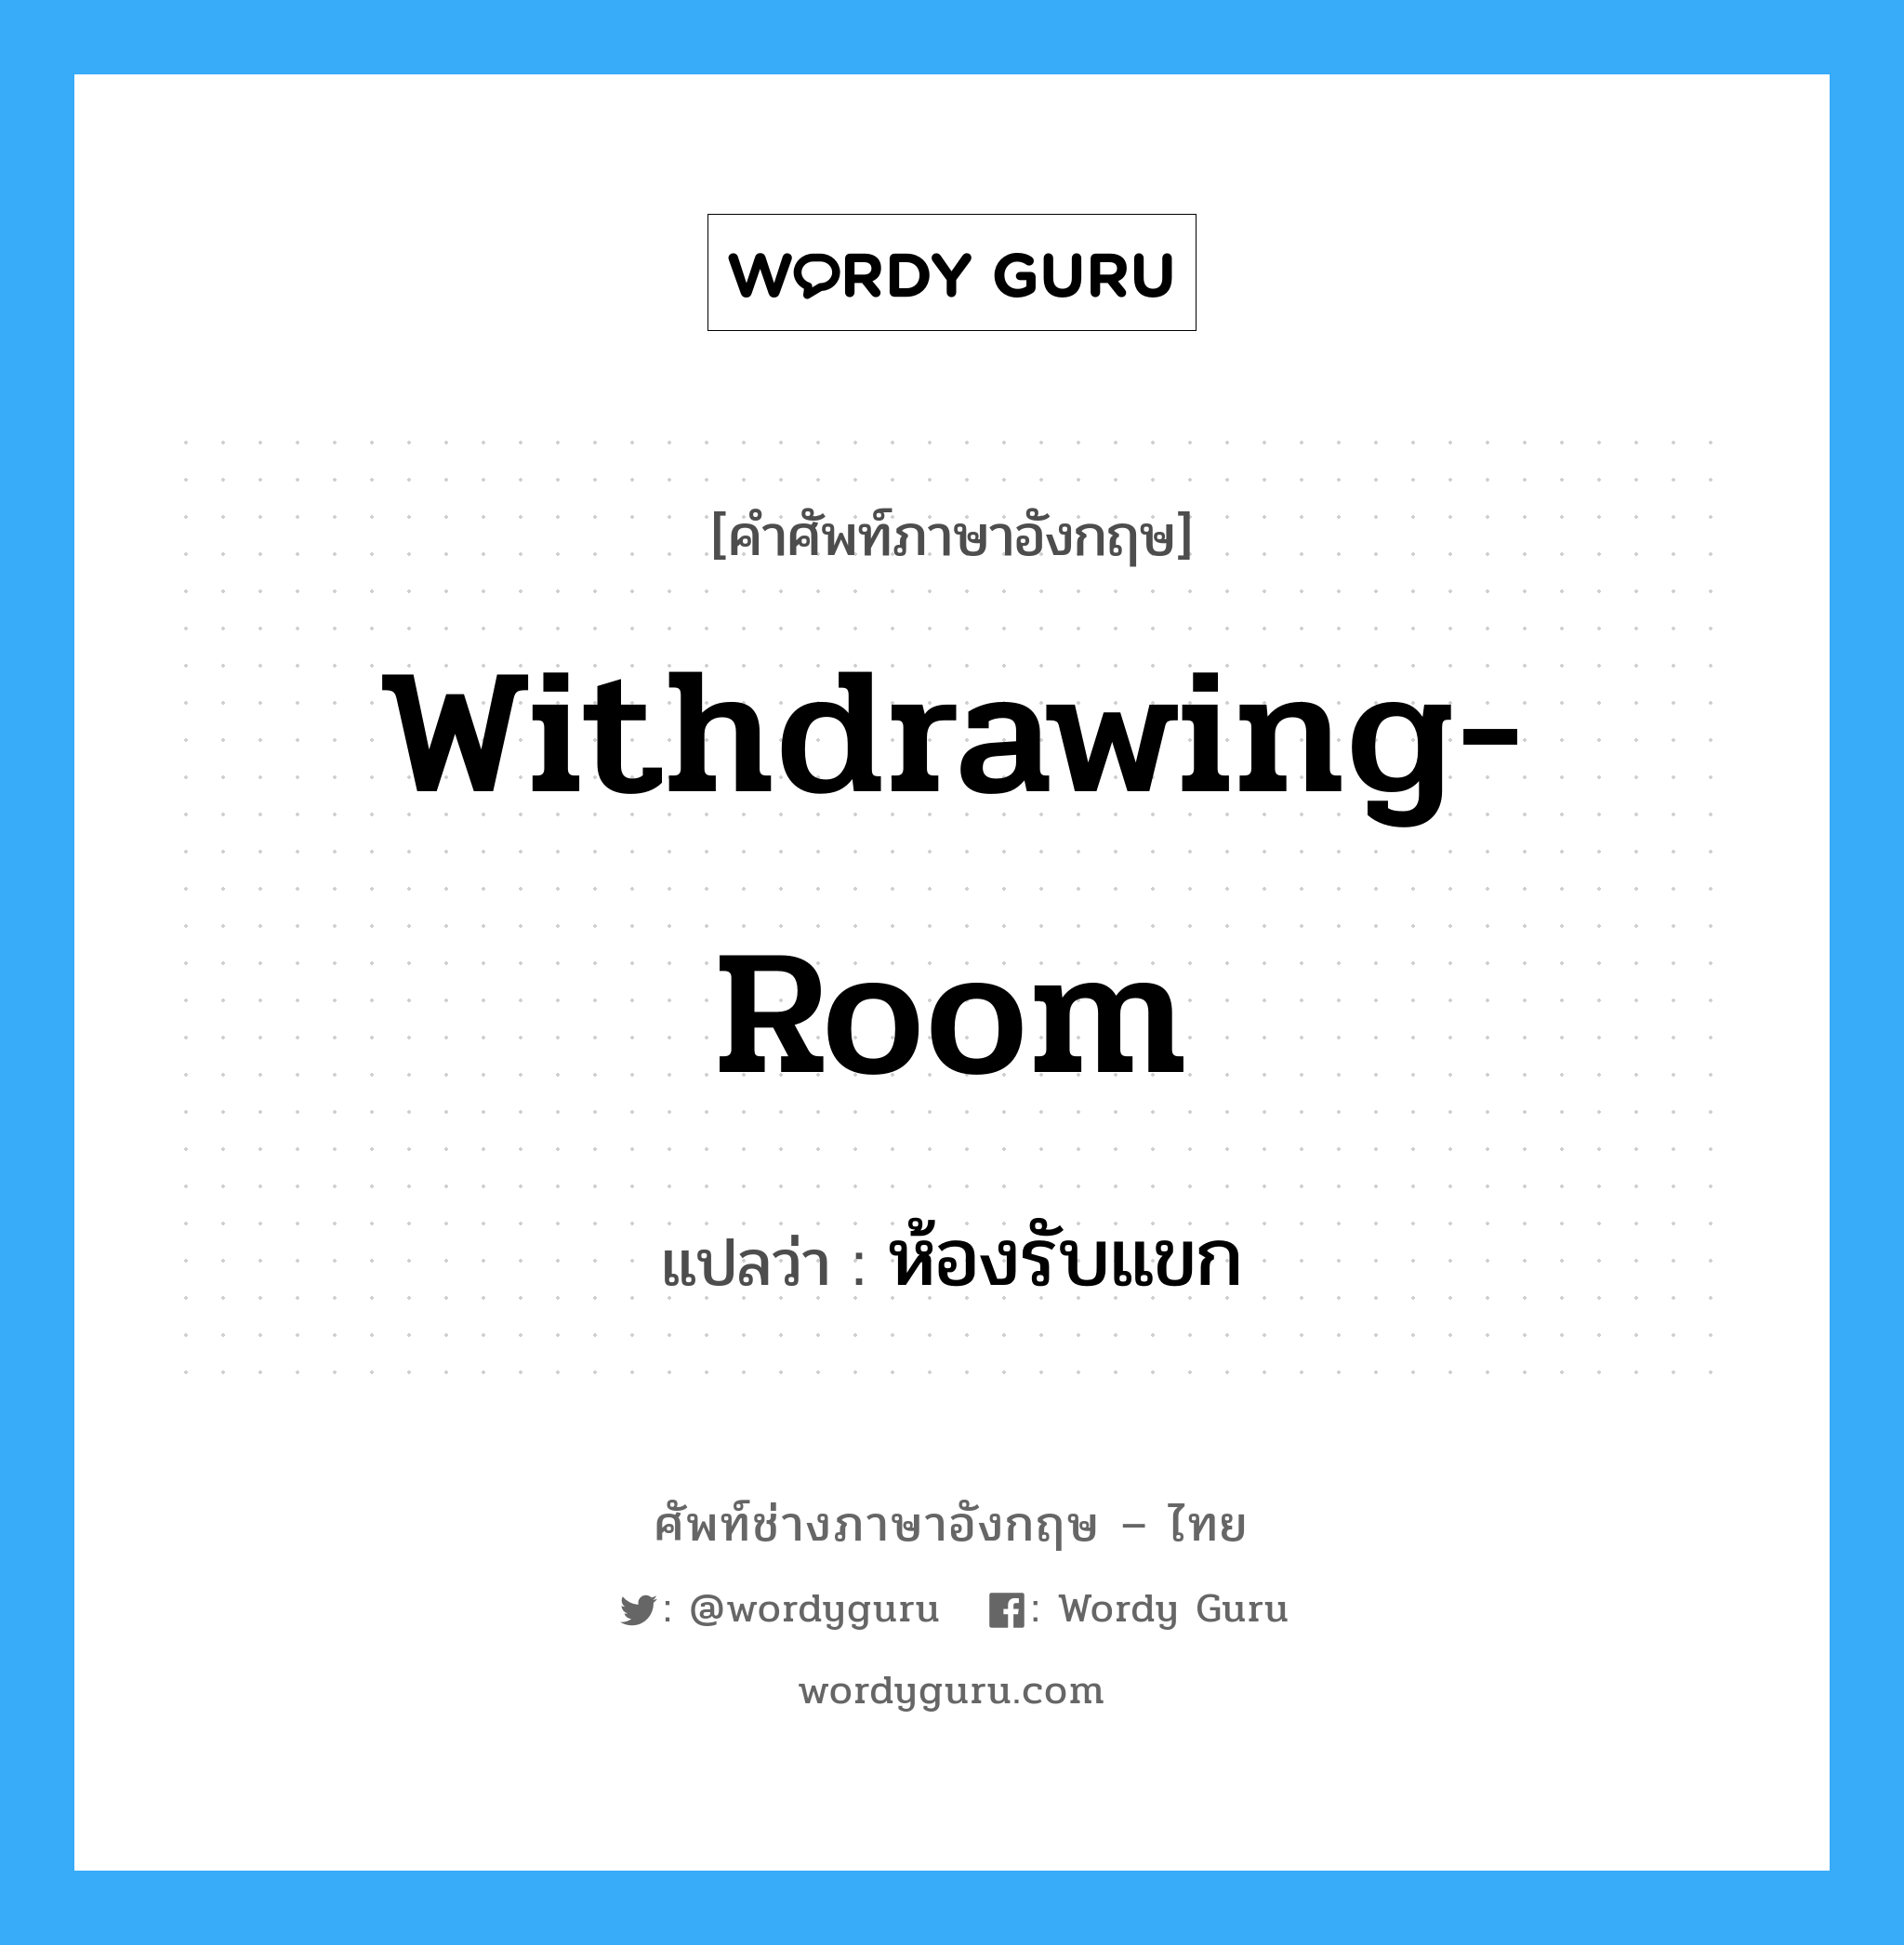 withdrawing-room แปลว่า?, คำศัพท์ช่างภาษาอังกฤษ - ไทย withdrawing-room คำศัพท์ภาษาอังกฤษ withdrawing-room แปลว่า ห้องรับแขก